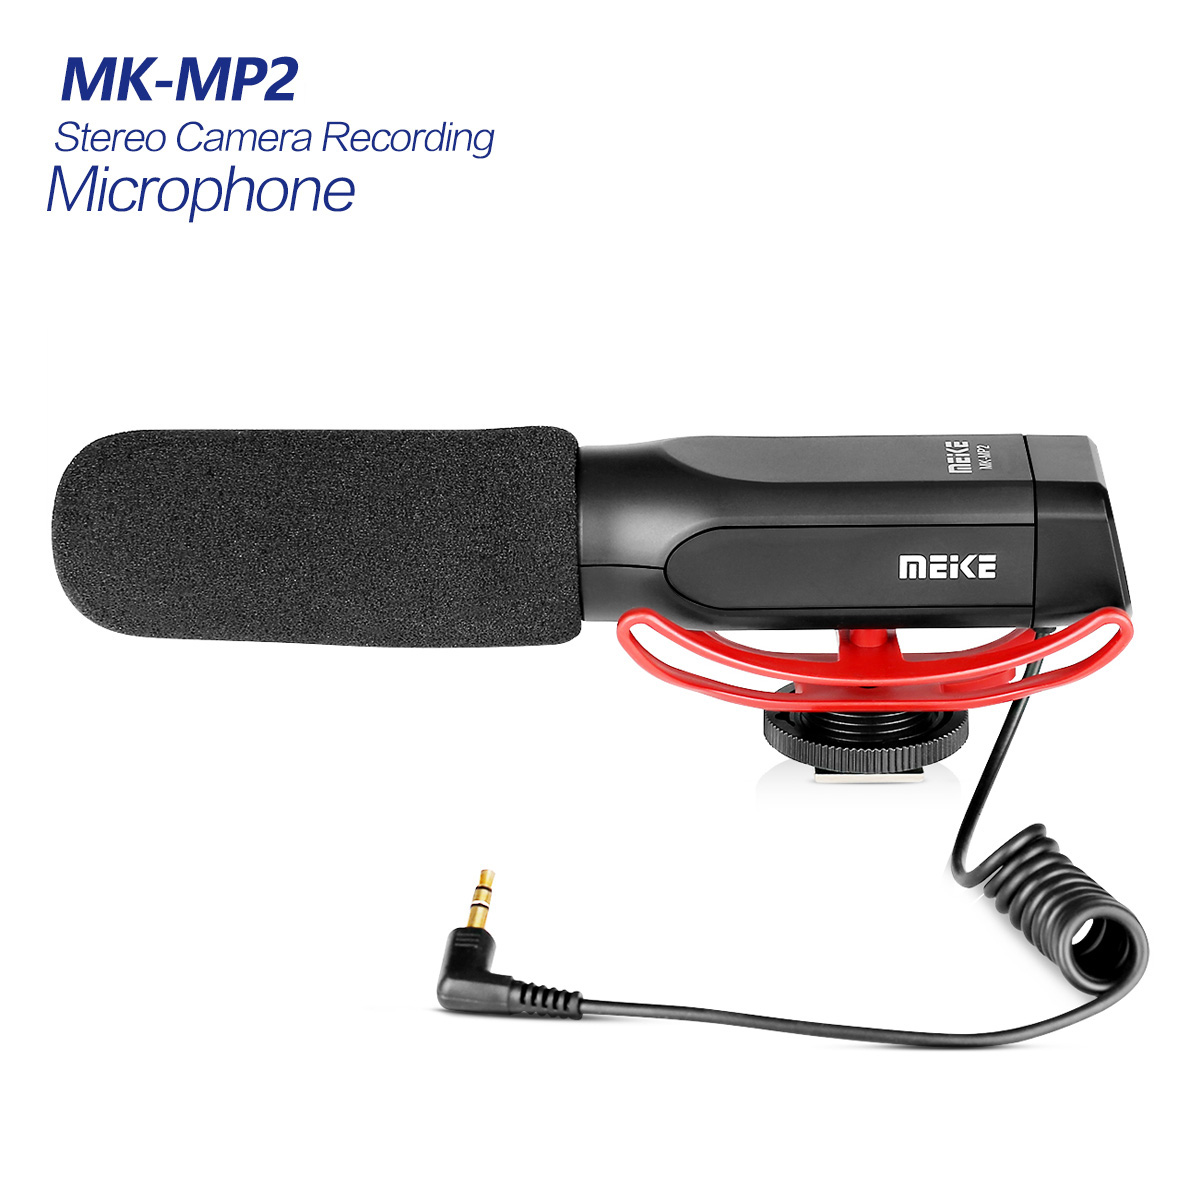 MK-MP2 Microphone